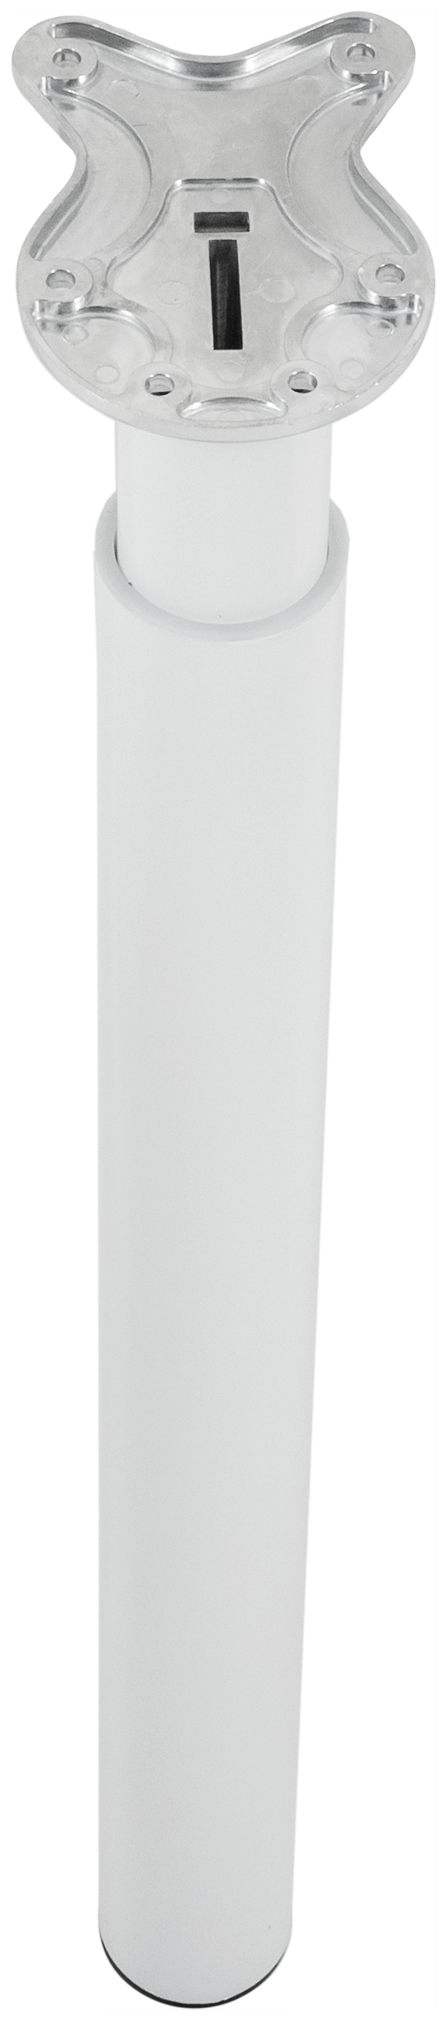 Опора регулируемая Edson FLE-011 71-110 см сталь цвет белый